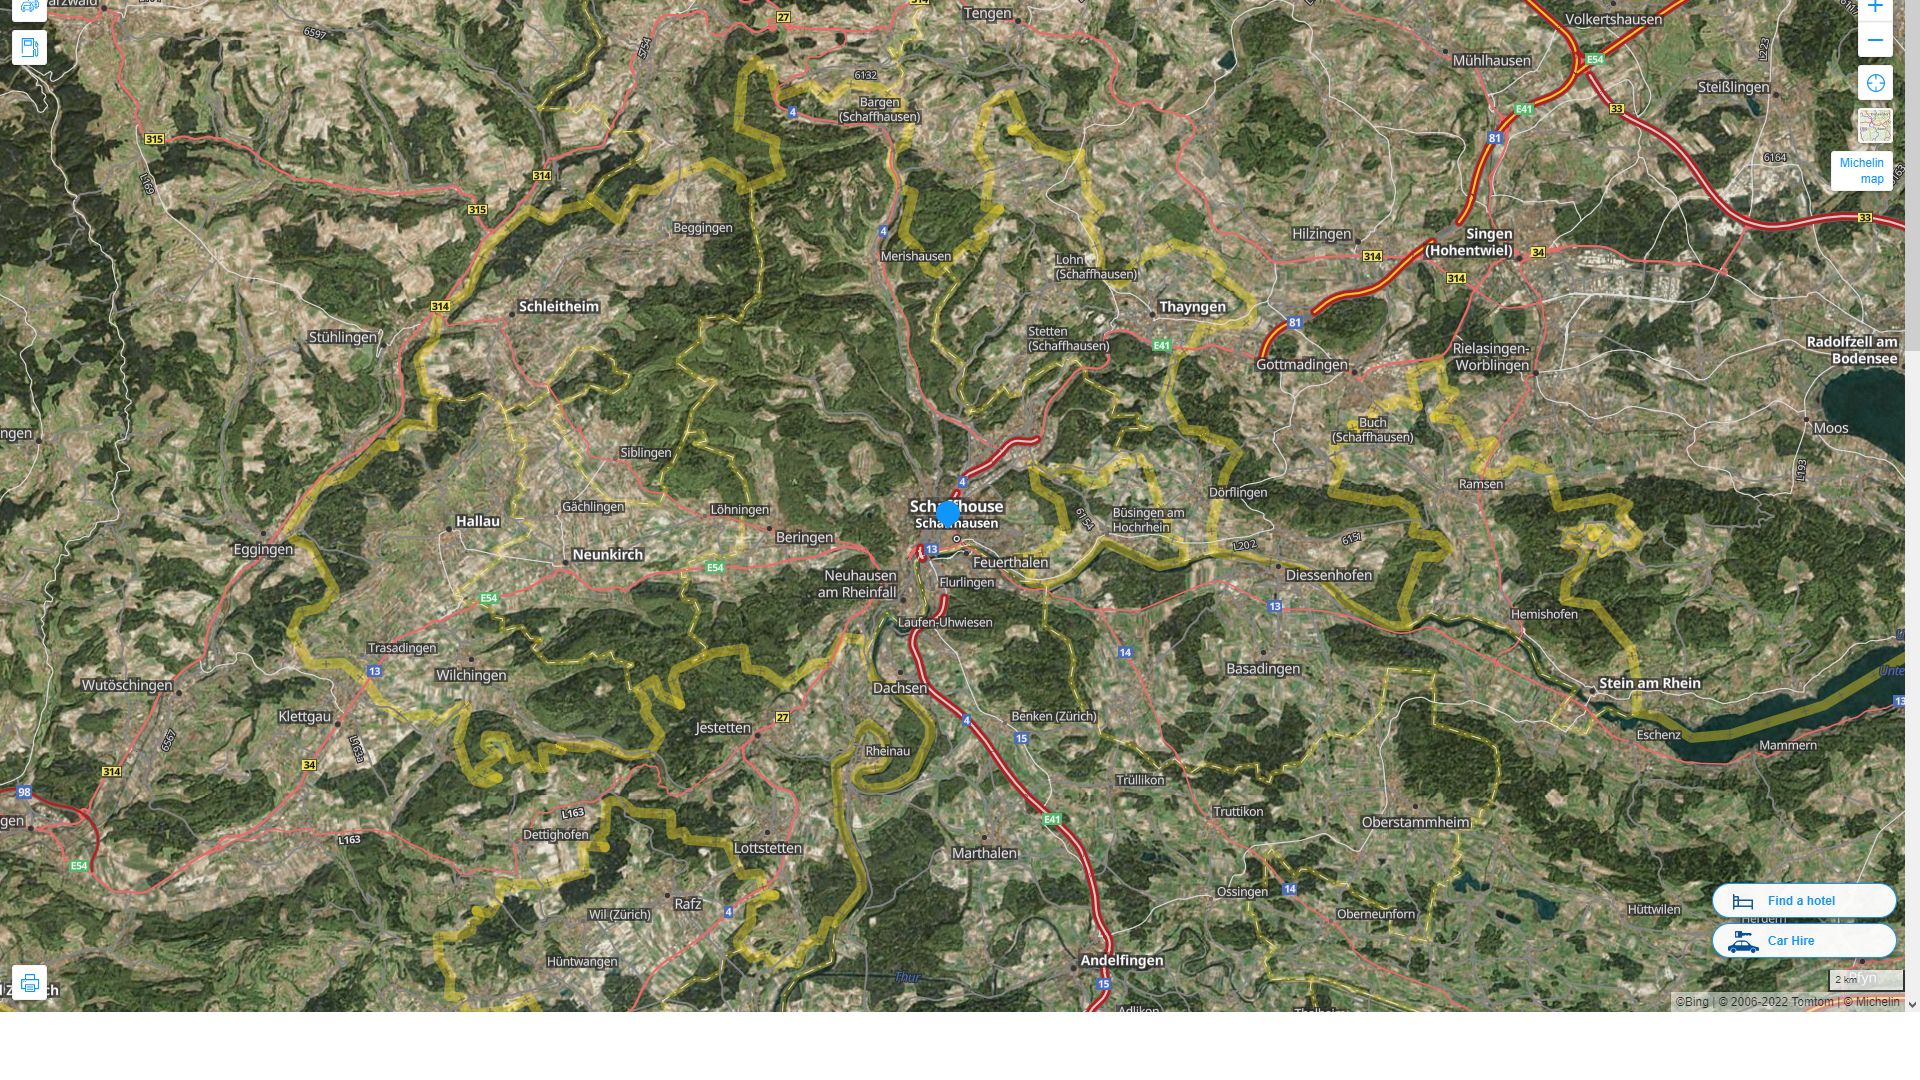 Schaffhausen Suisse Autoroute et carte routiere avec vue satellite